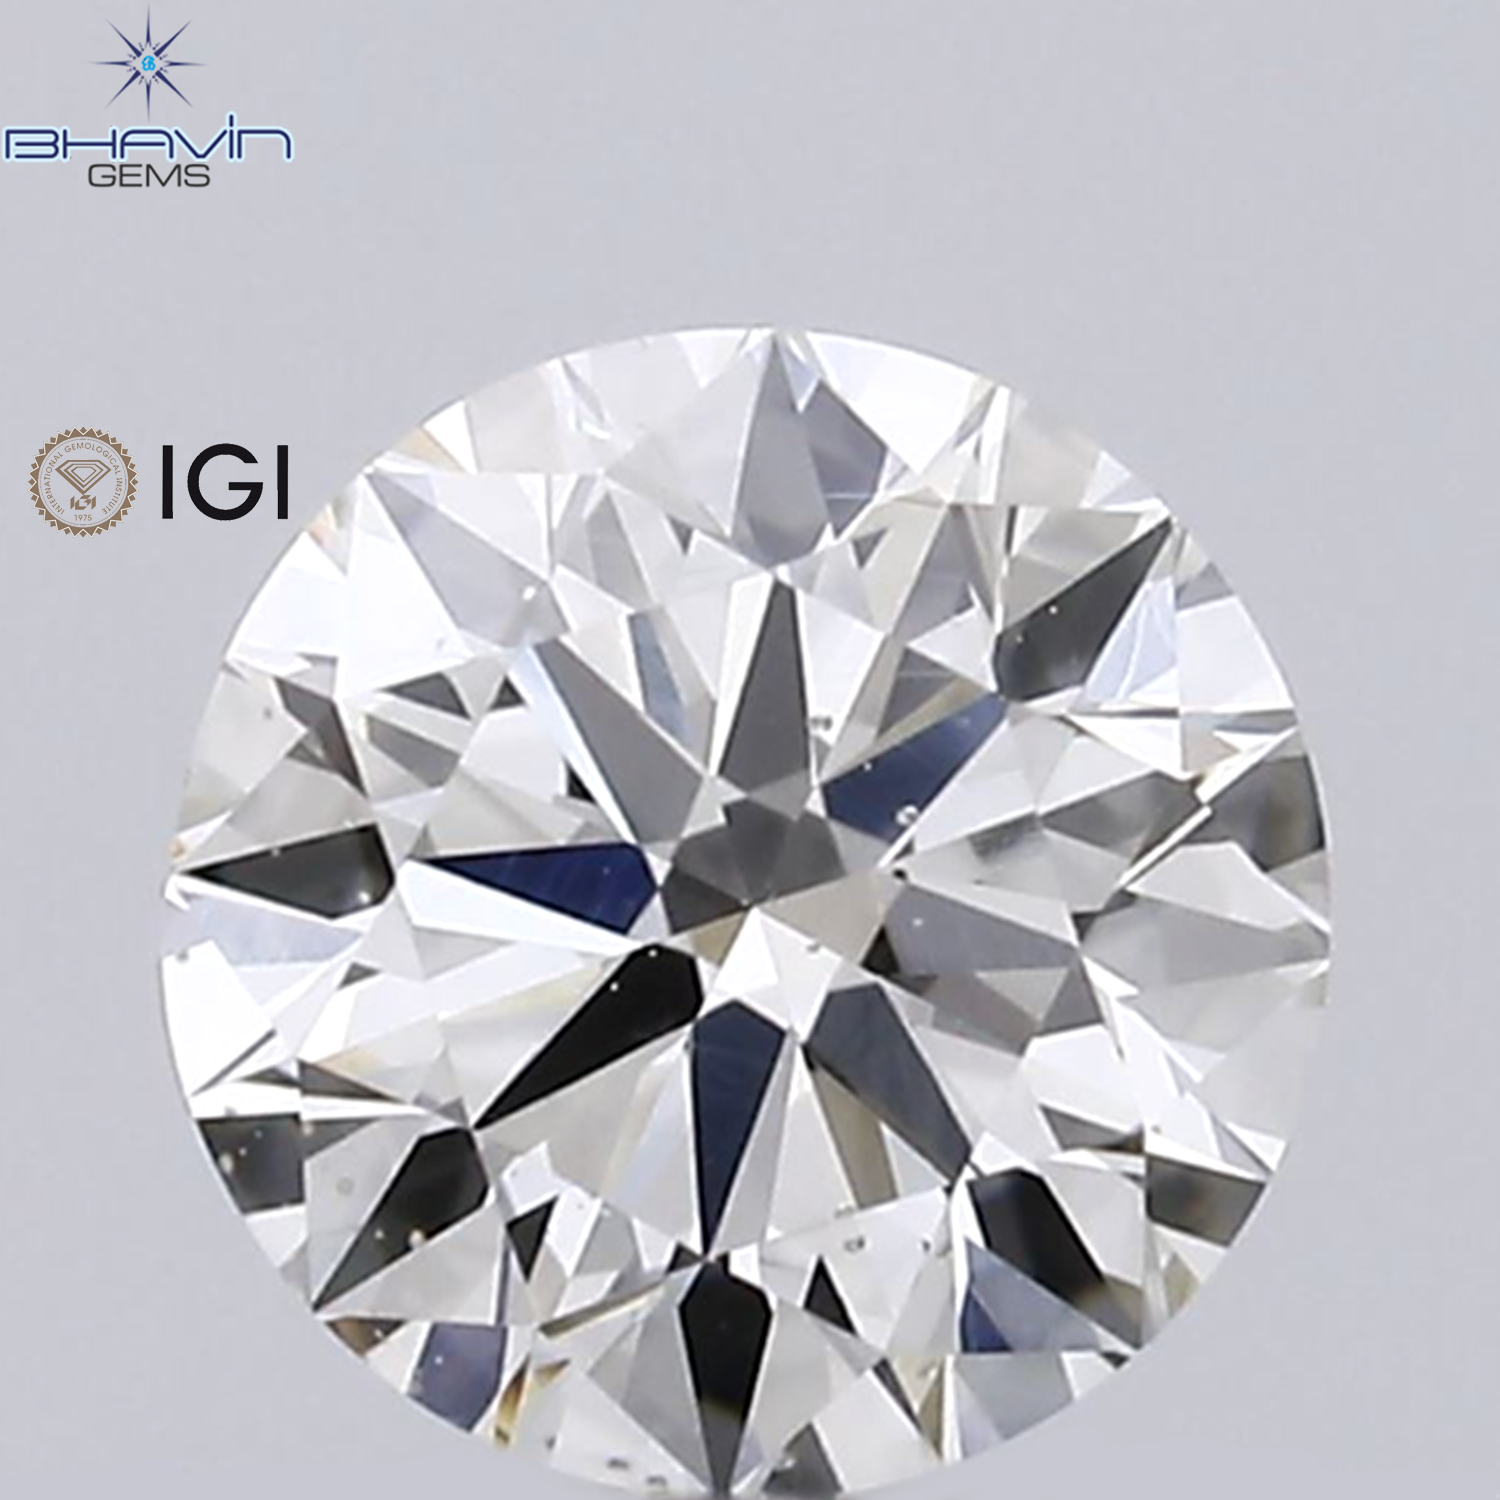 IGI Certified 0.31 CT Round Diamond White(H) Diamond Natural Loose Diamond SI1 Clarity (4.32 MM)